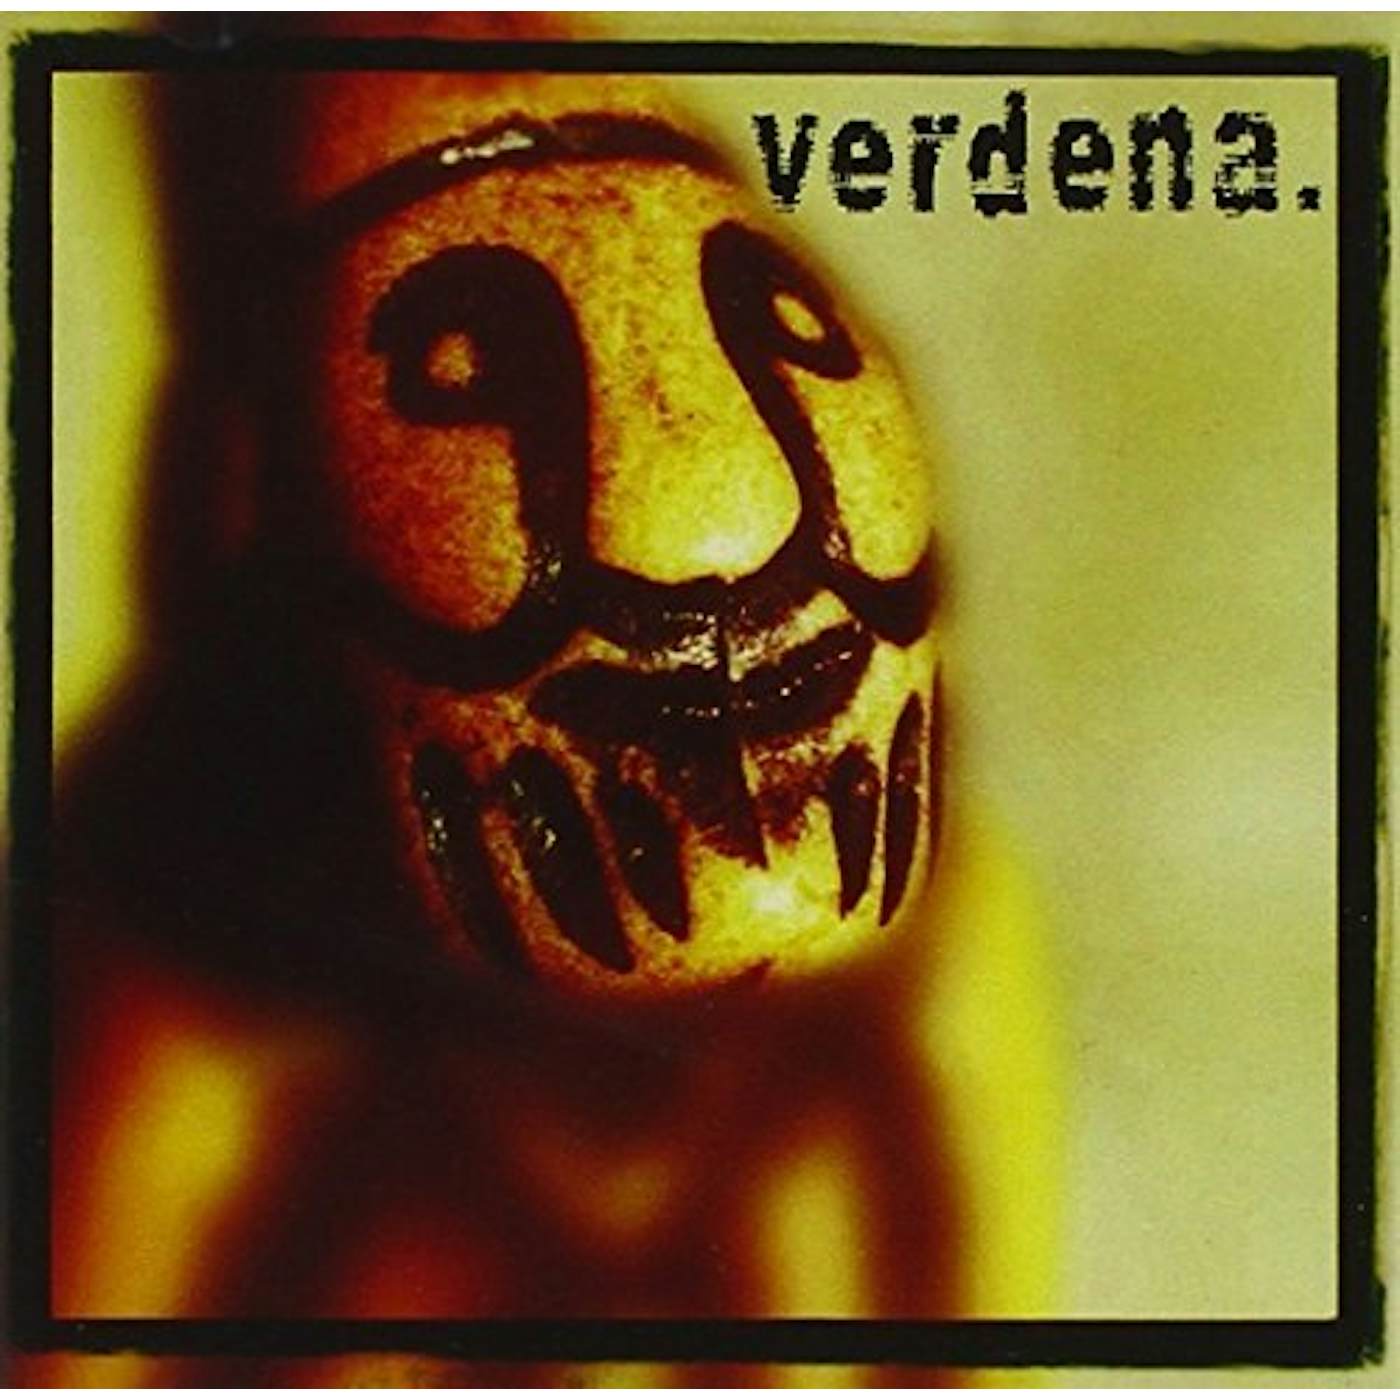 Verdena Vinyl Record